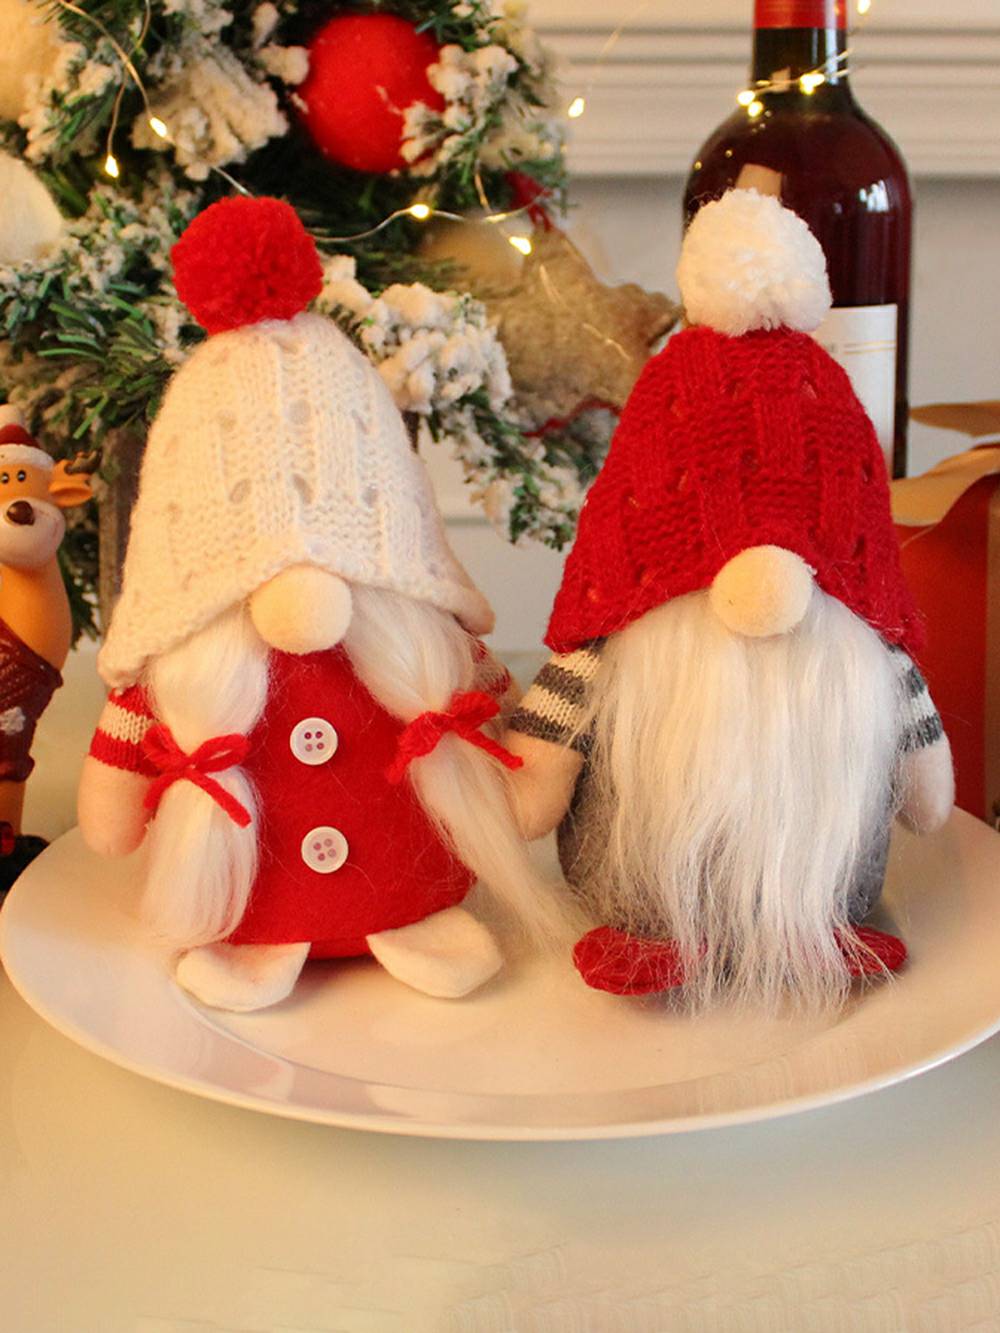 Noordse pluche elf decoratie en wit bebaarde paar Kerstmis